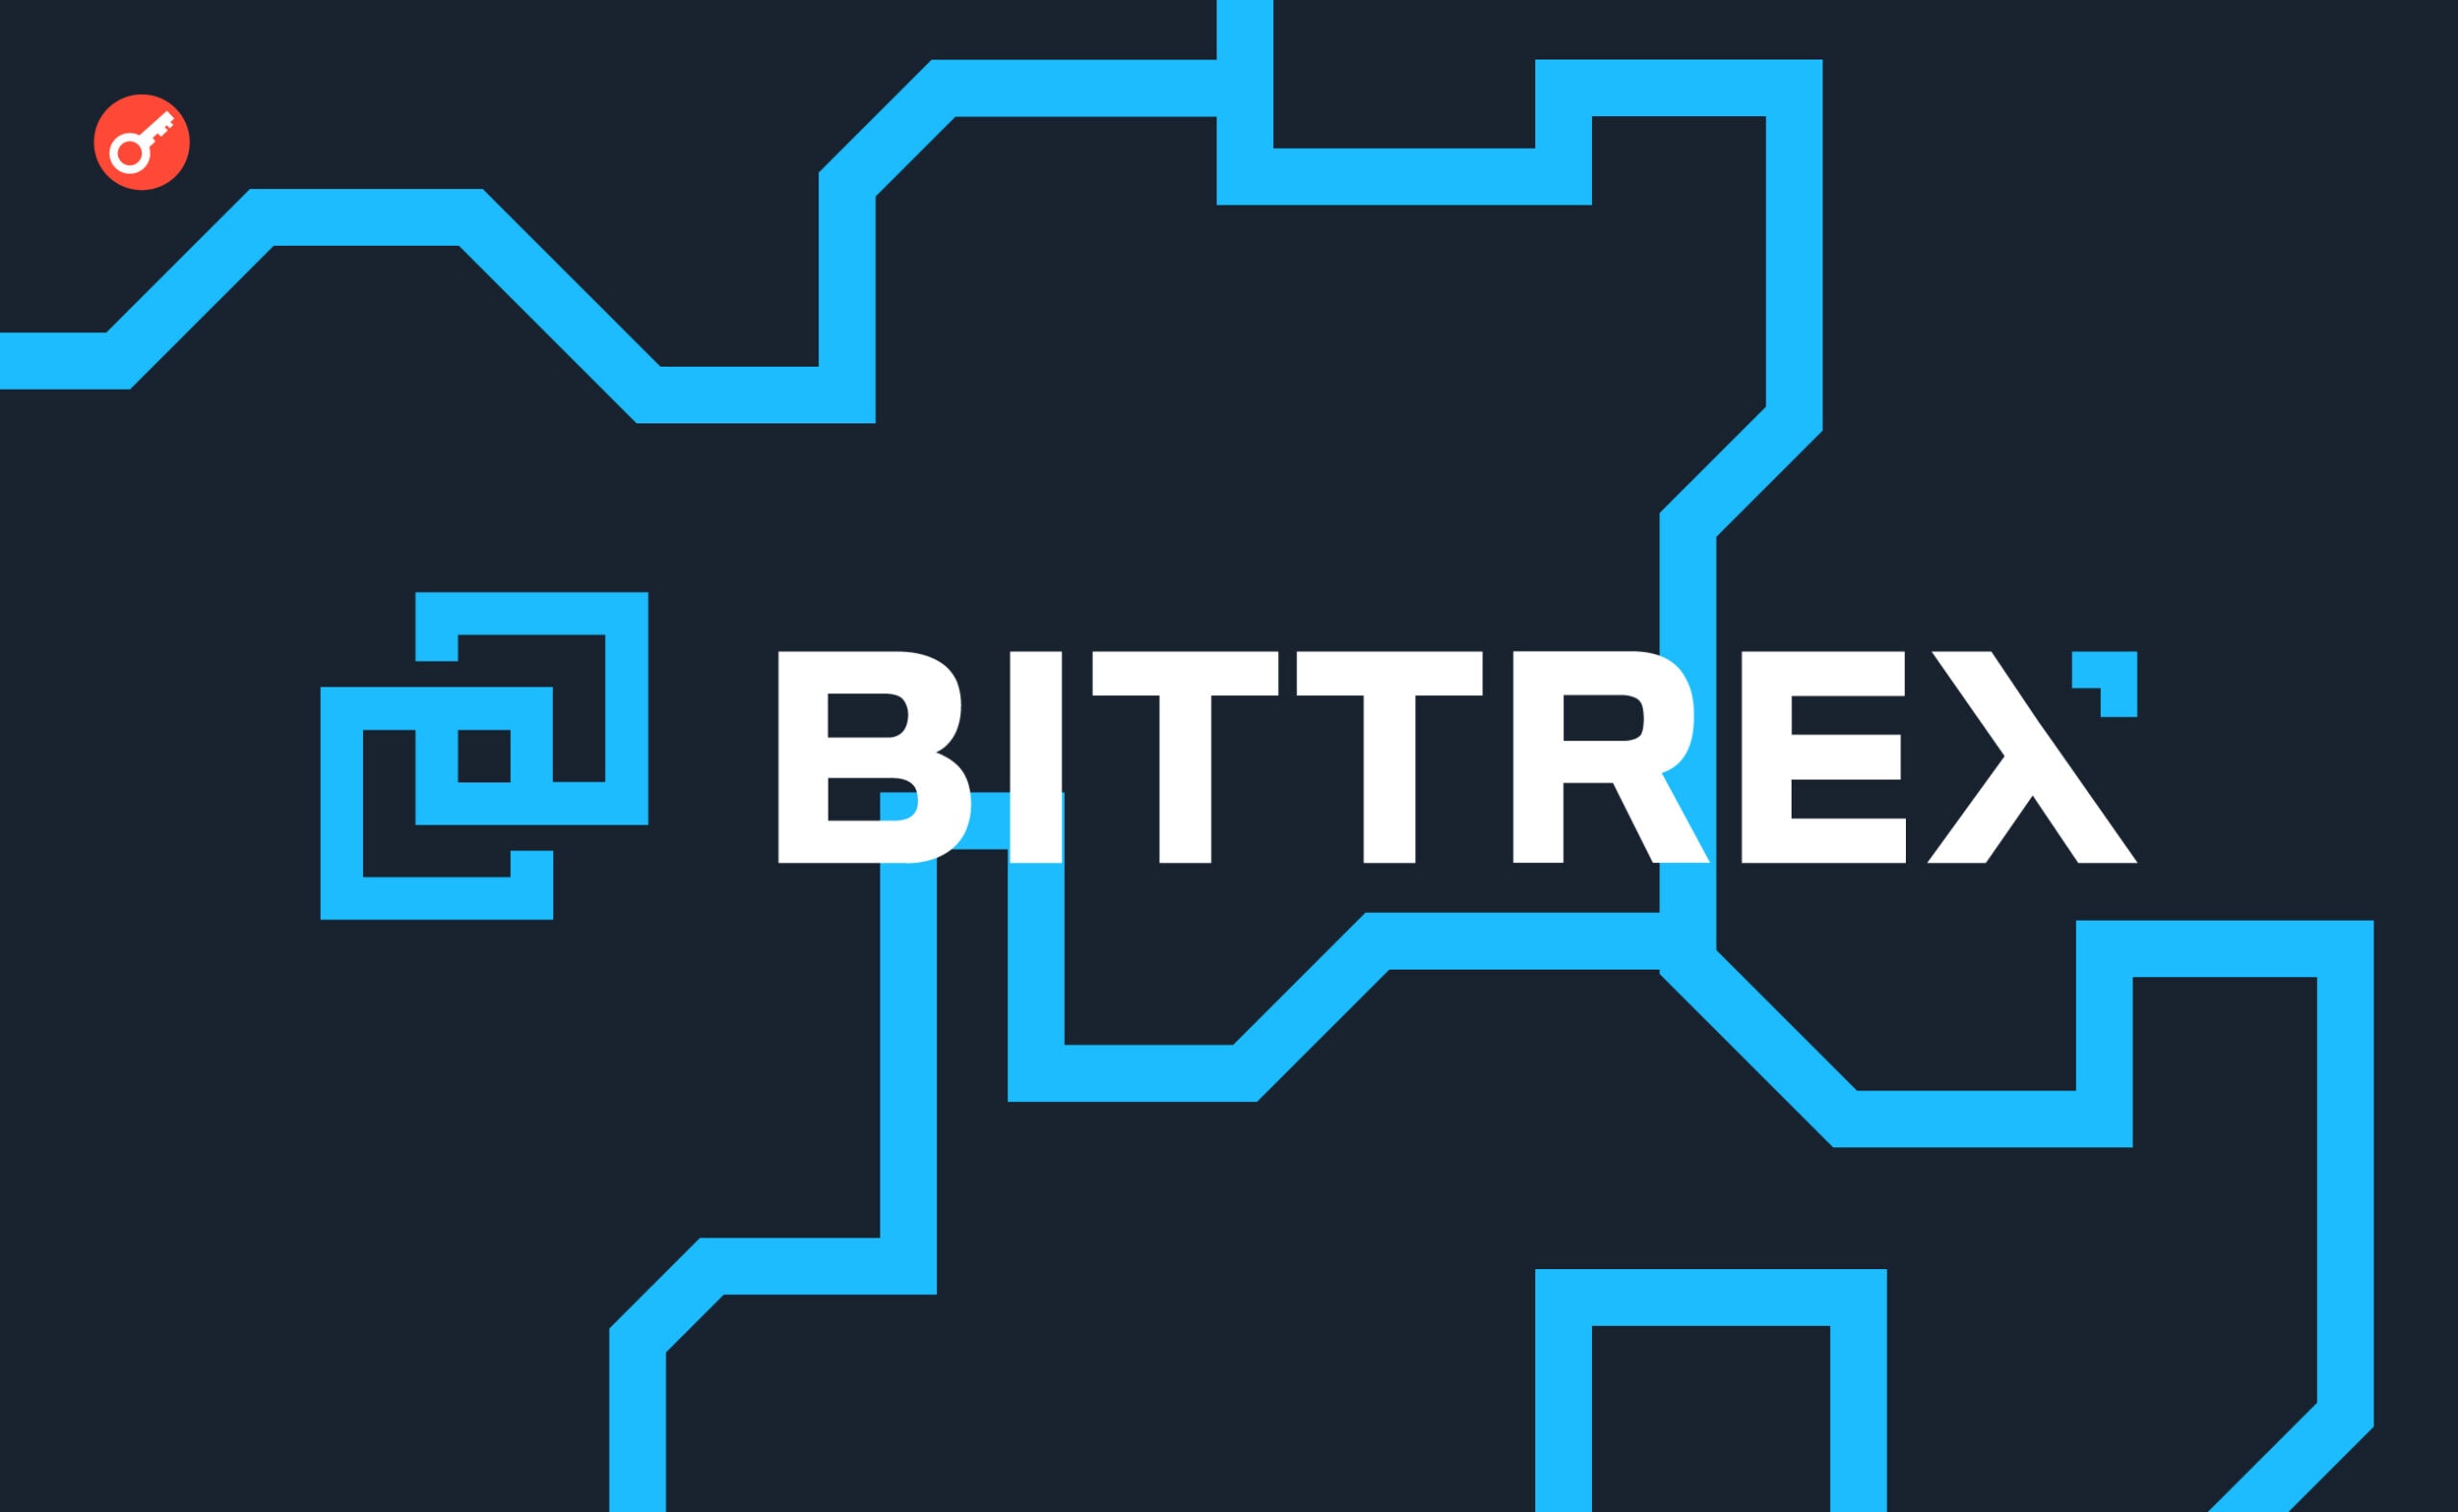 Bittrex Global оголосила про зупинку діяльності. Головний колаж новини.